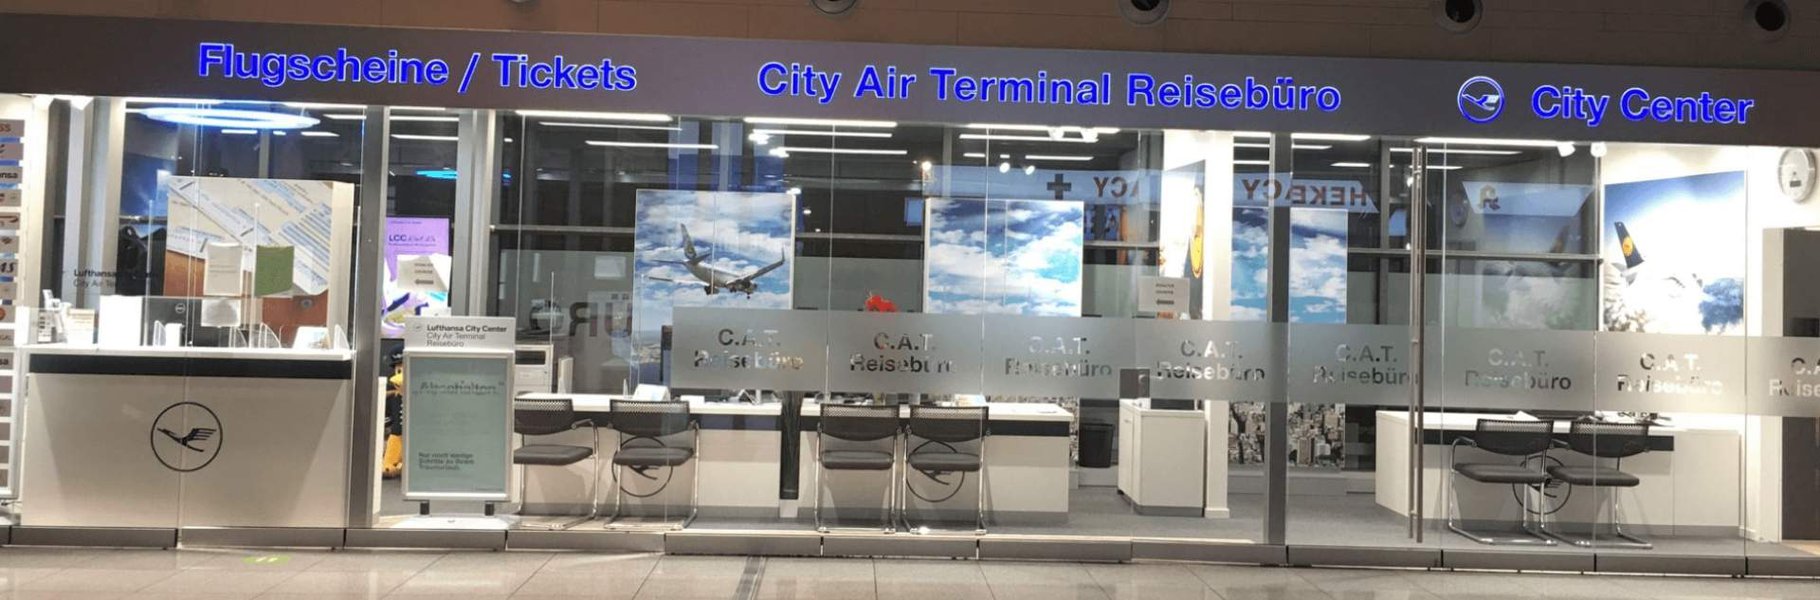 City Air Terminal Reisebüro